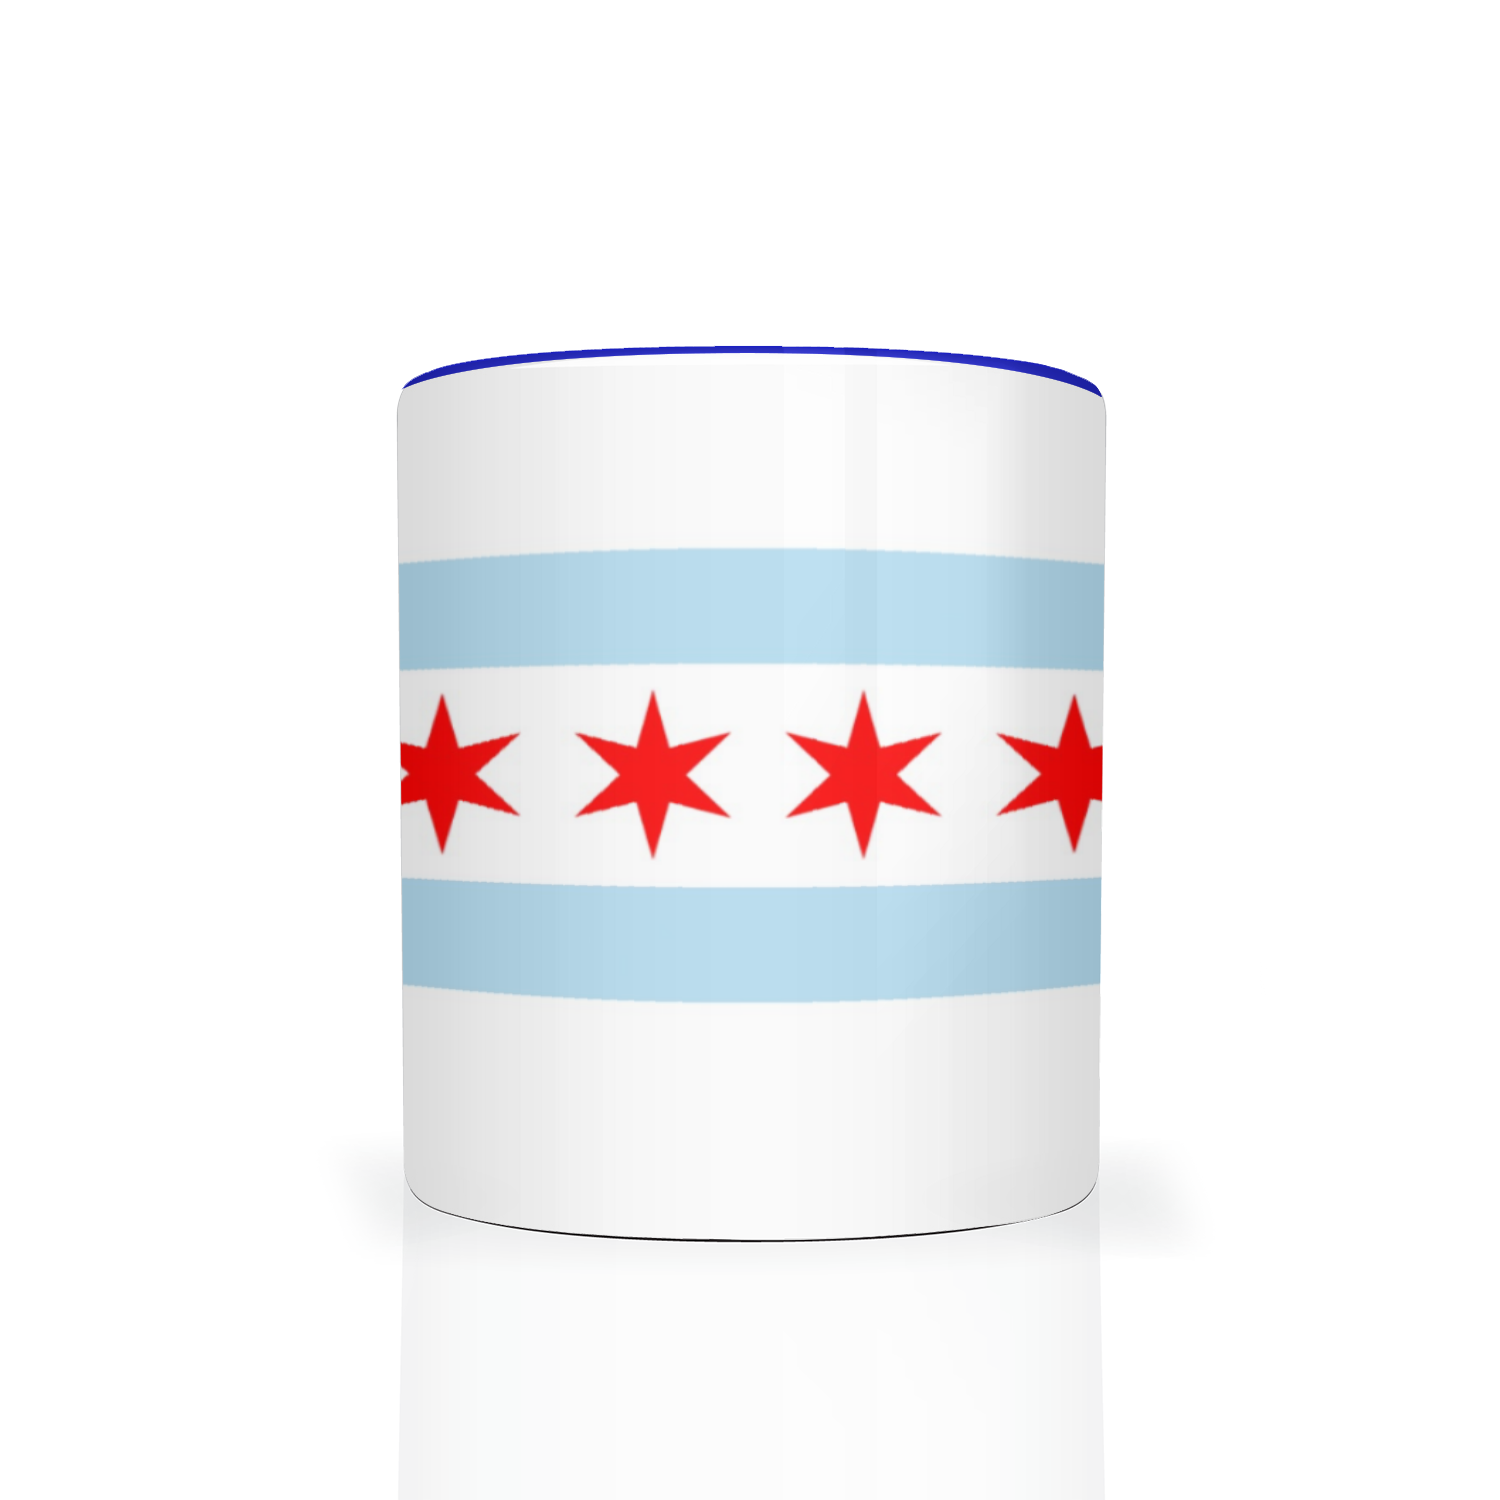 Chicago Flag 2 Tone 11oz Mug